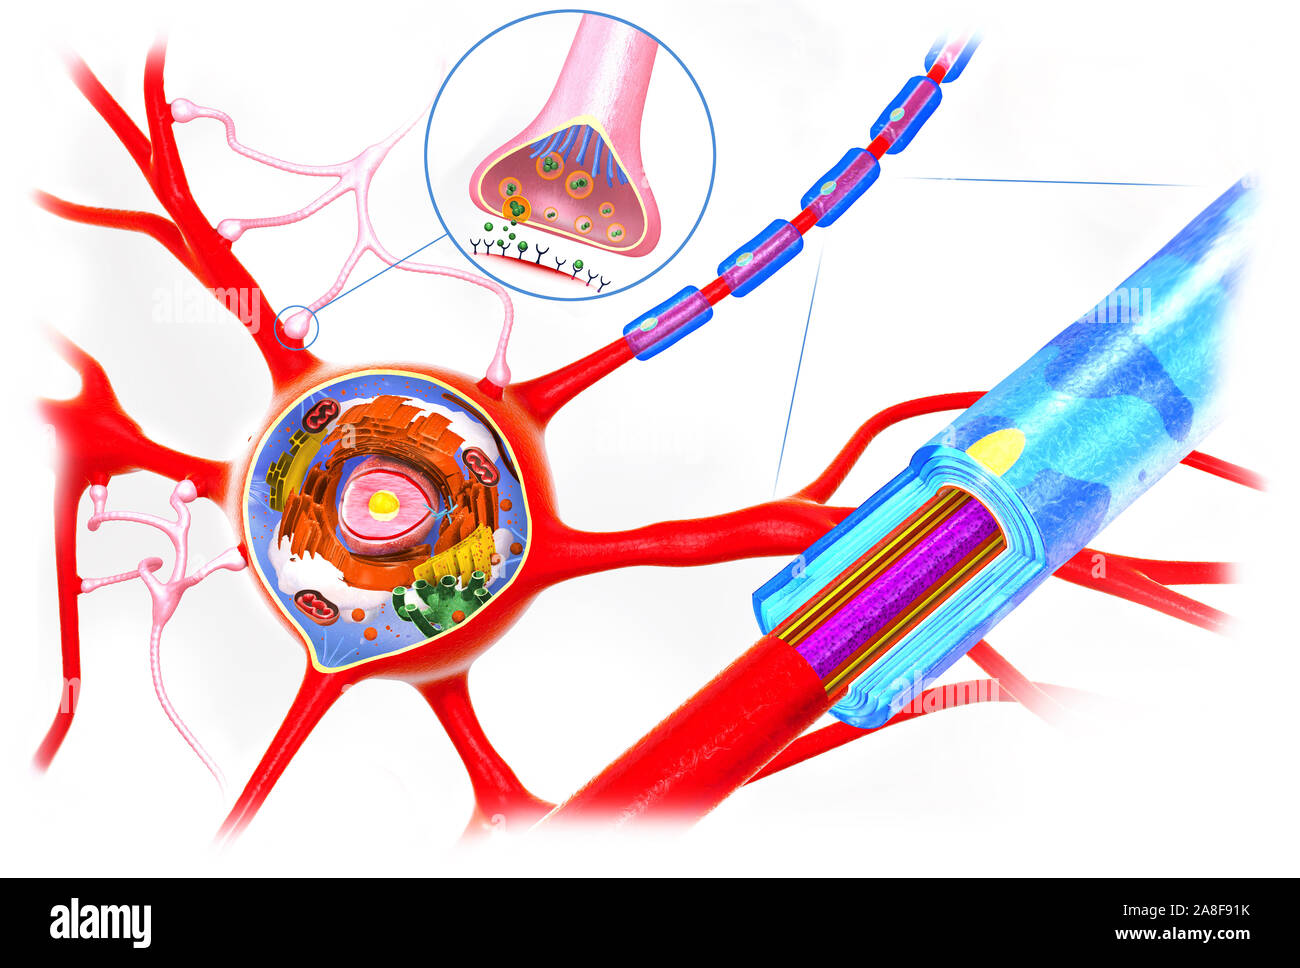 Anatomie des cellules nerveuses, illustration Banque D'Images